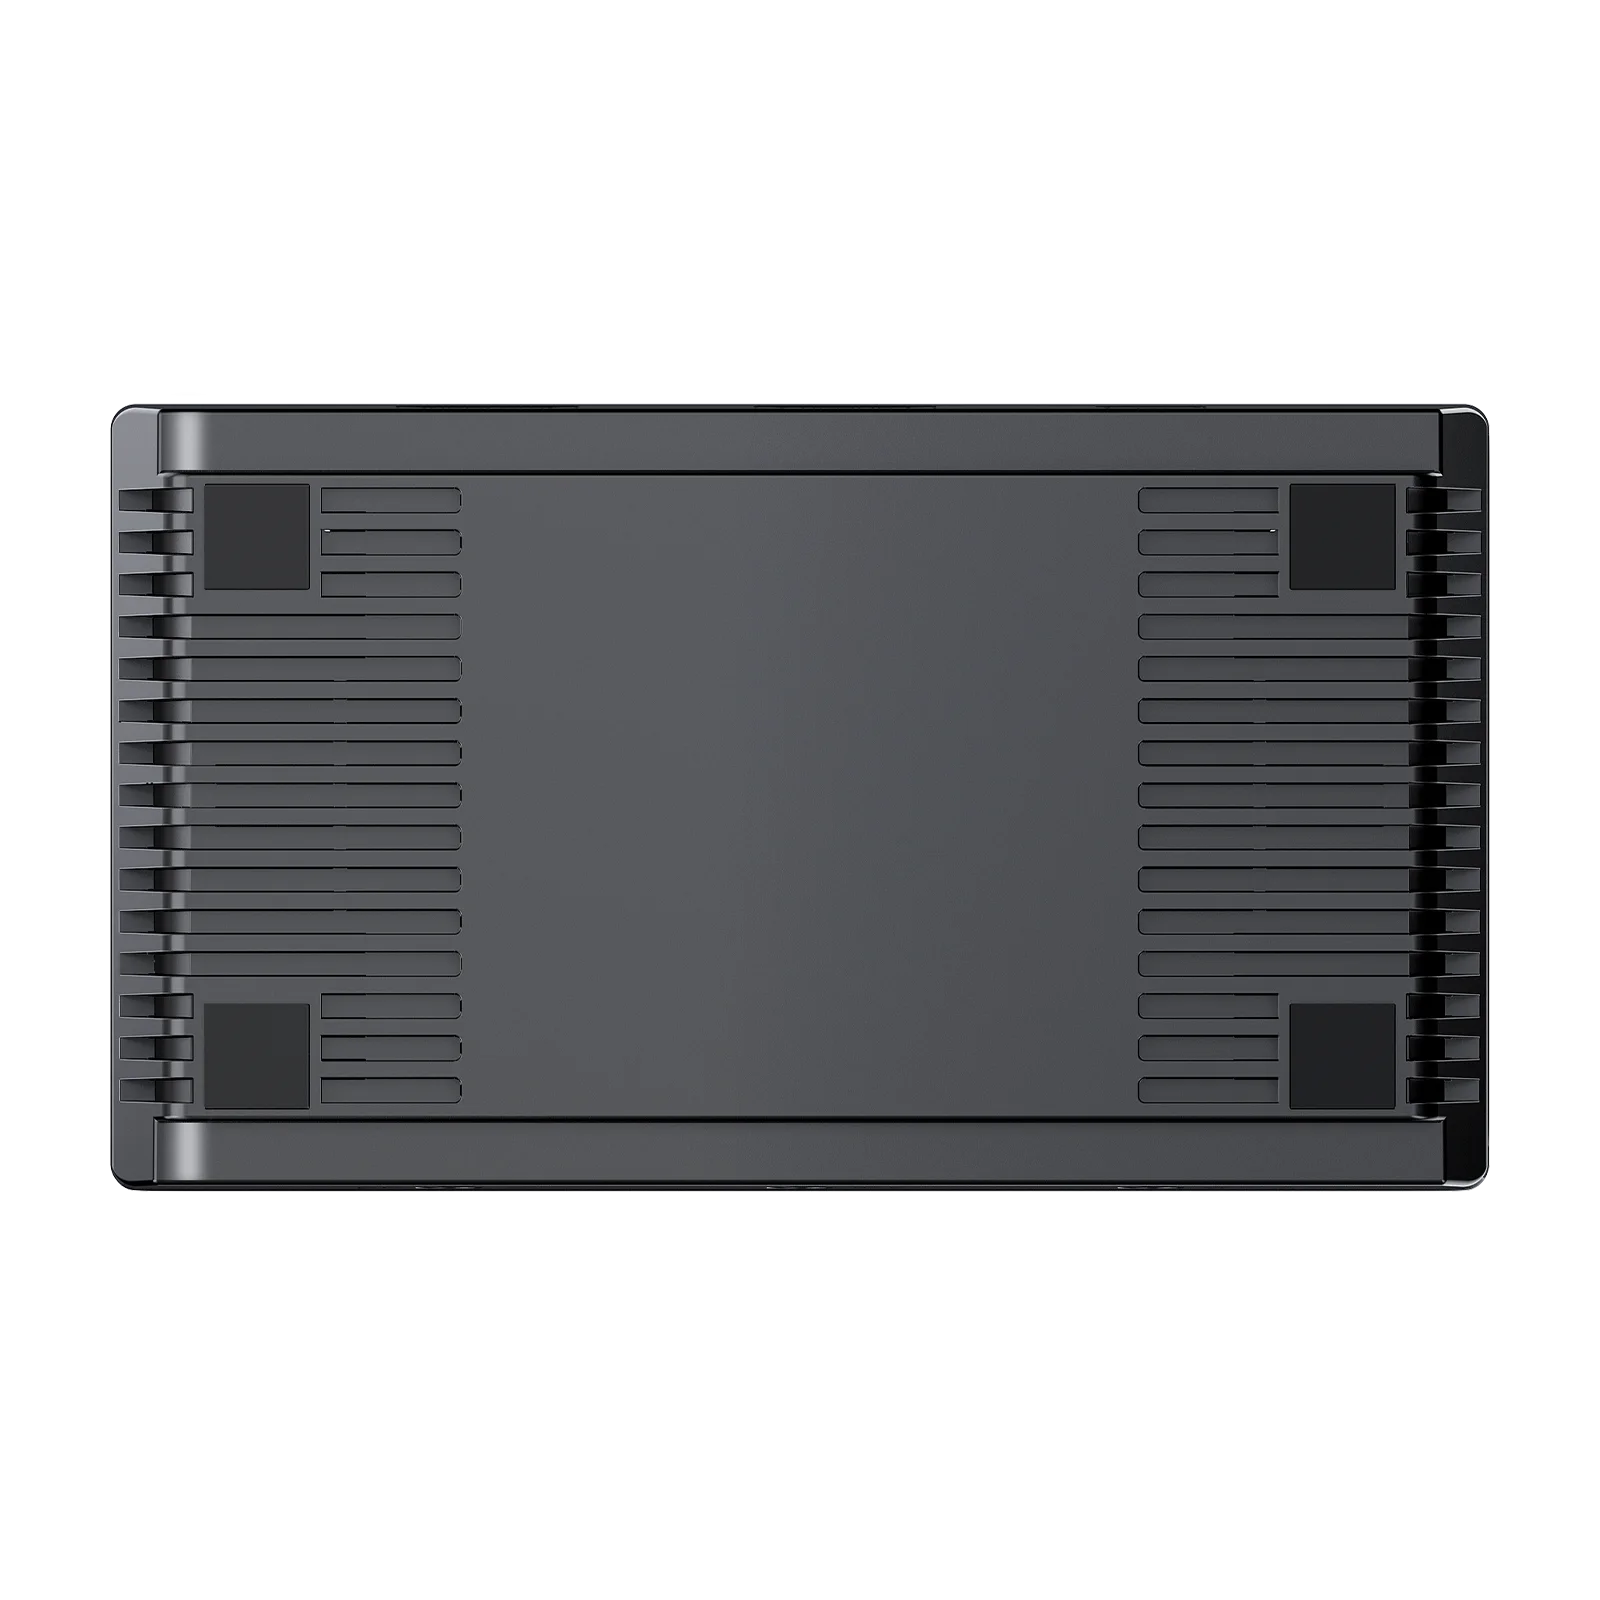 HD 4K USB 3,0 HDMI Видеозахват Запись Карточной игры с микрофоном В Прямом эфире для PS4 PS5 PC Видеокамеры DSLR Камеры Ezcap333 Изображение 1